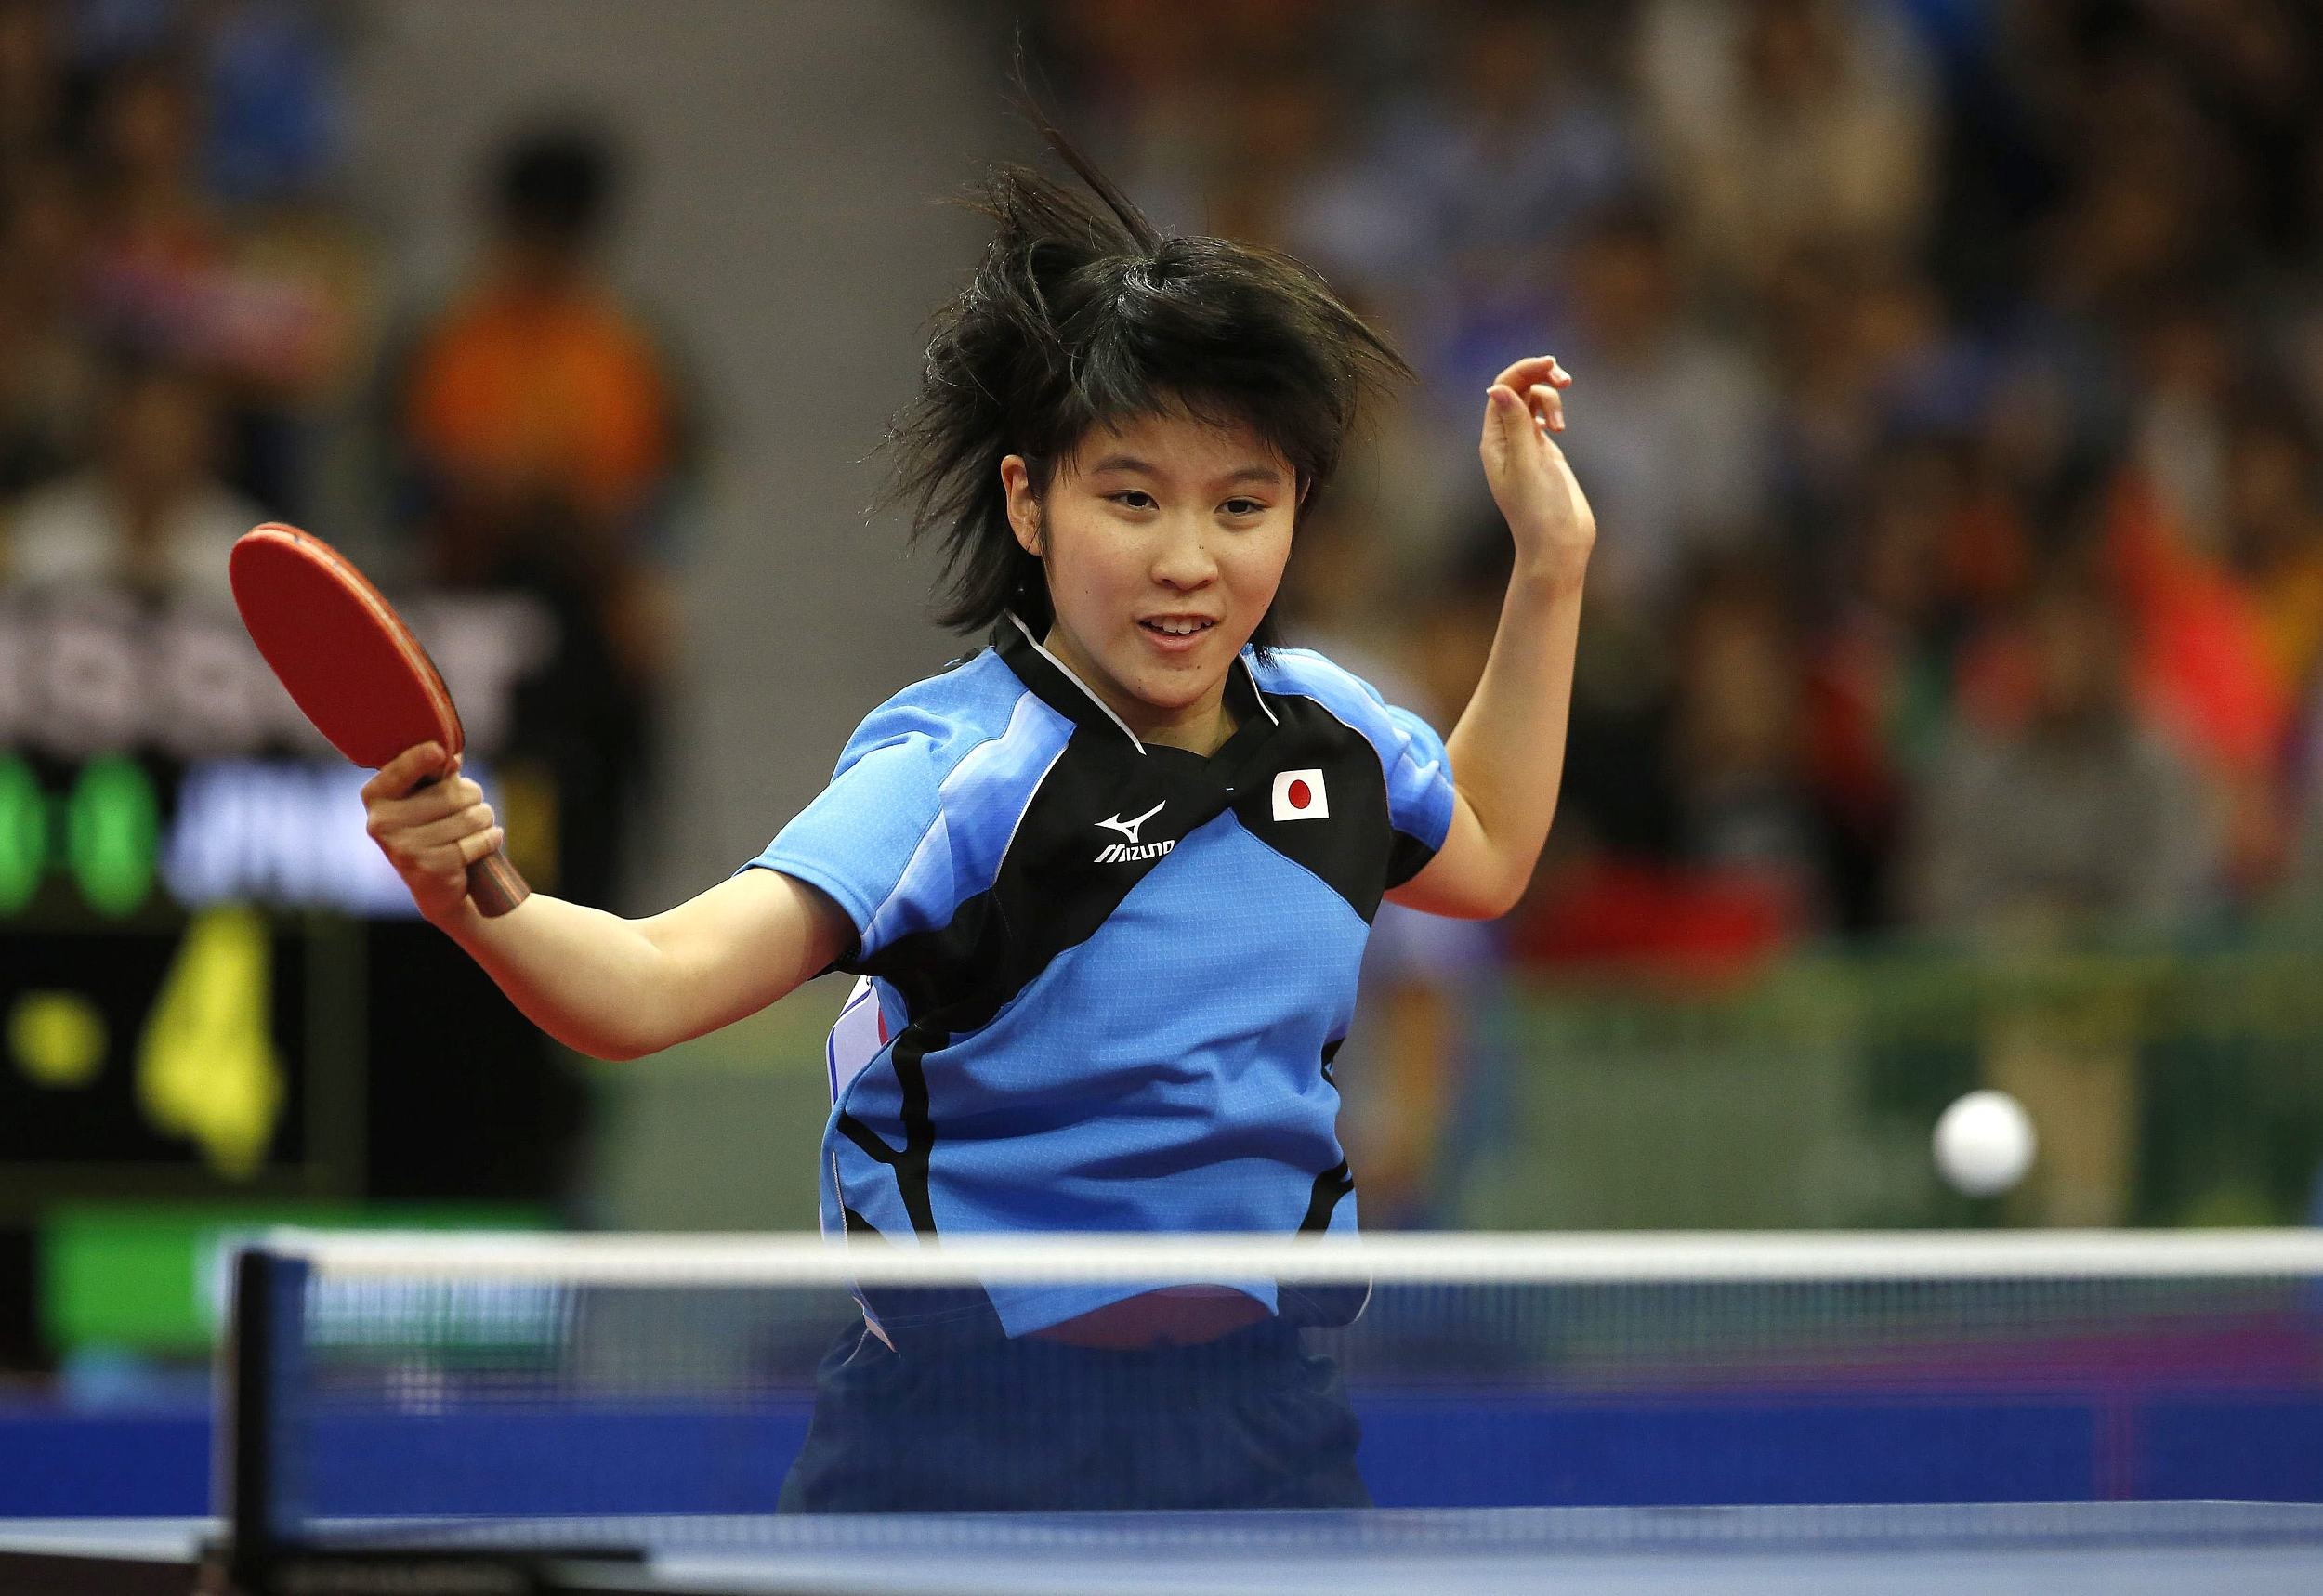 乒乓 17歲平野美宇去年戰績優異乒協派800萬日元獎金 香港01 即時體育